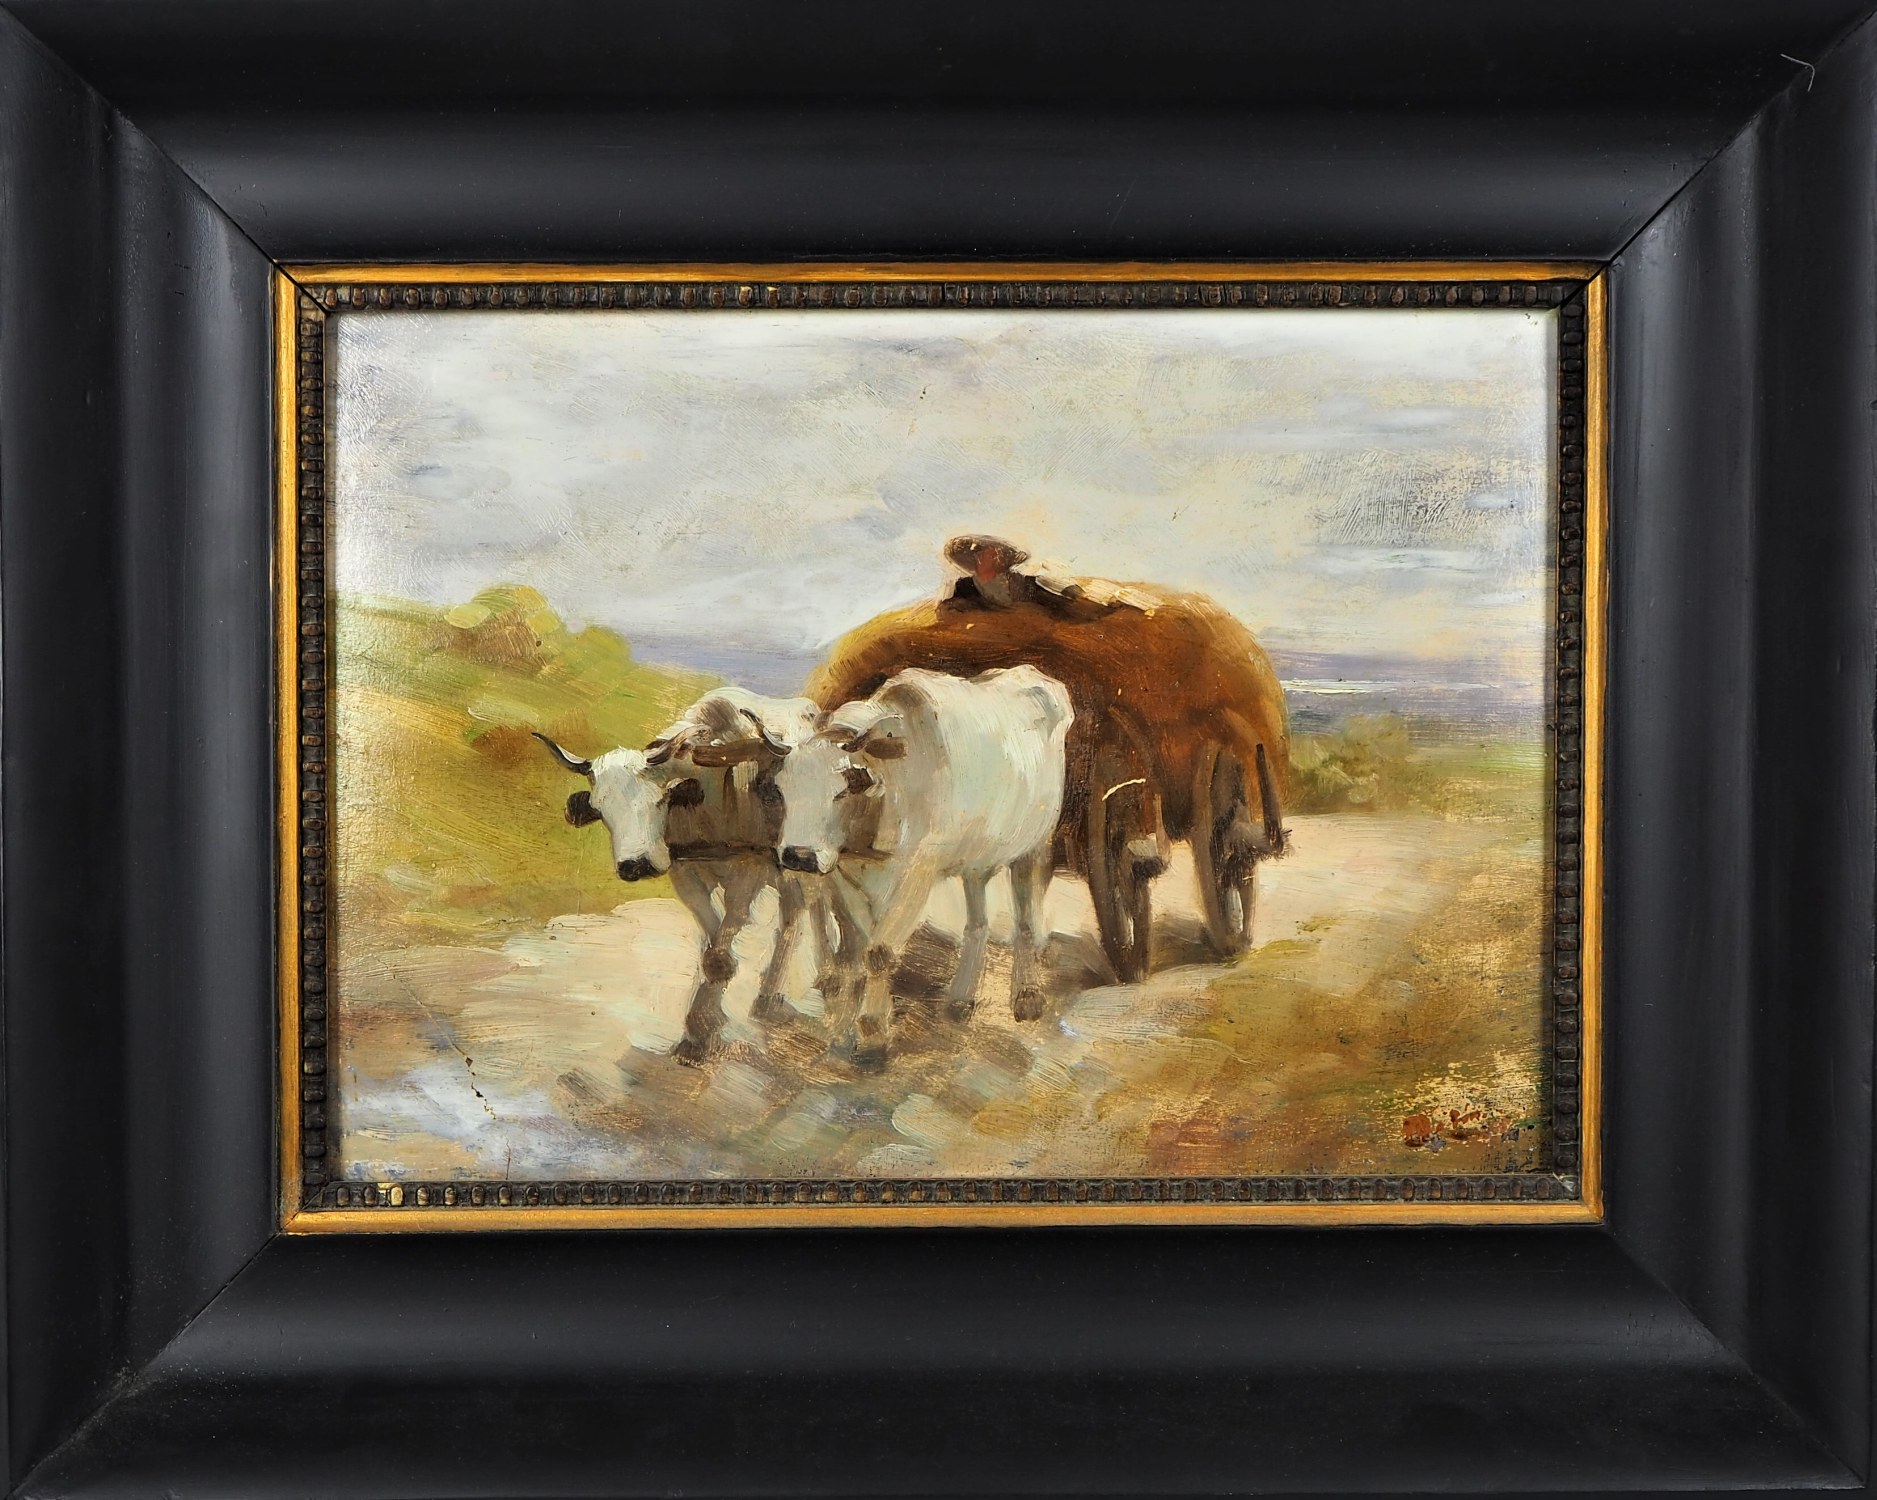 Nicolae Ion Grigorescu (1838, Pitaru - 1907, Câmpina), attributed - Landscape with ox-cart.